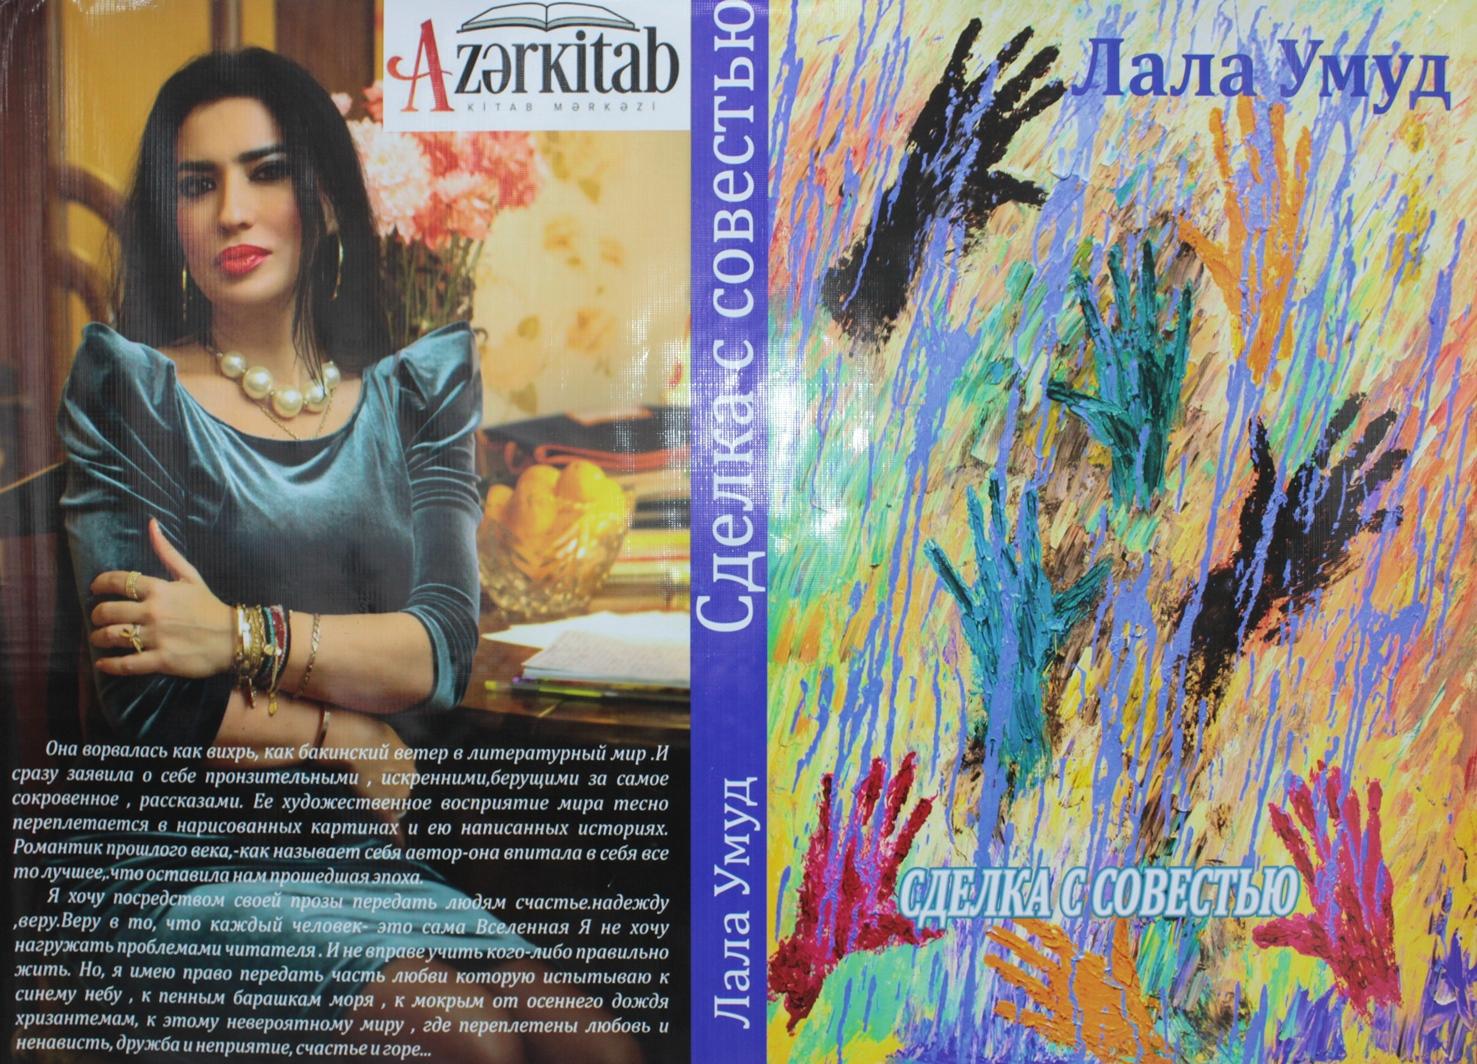 "Сделка с совестью" азербайджанской писательницы (ФОТО)